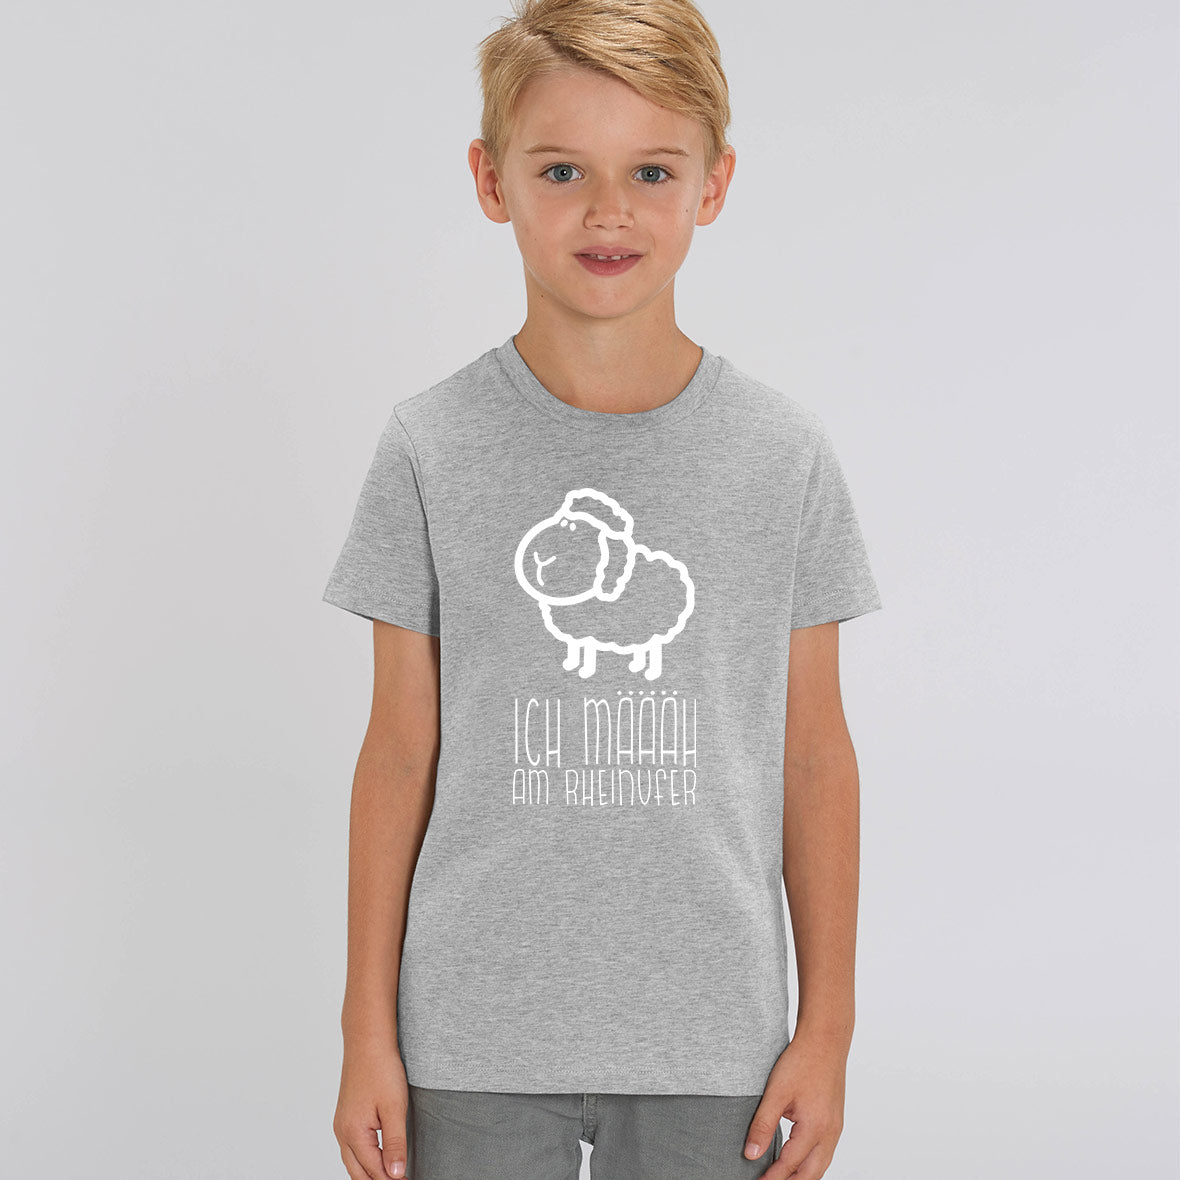 Rheinmäääher T-Shirt Kinder – Rheinufer